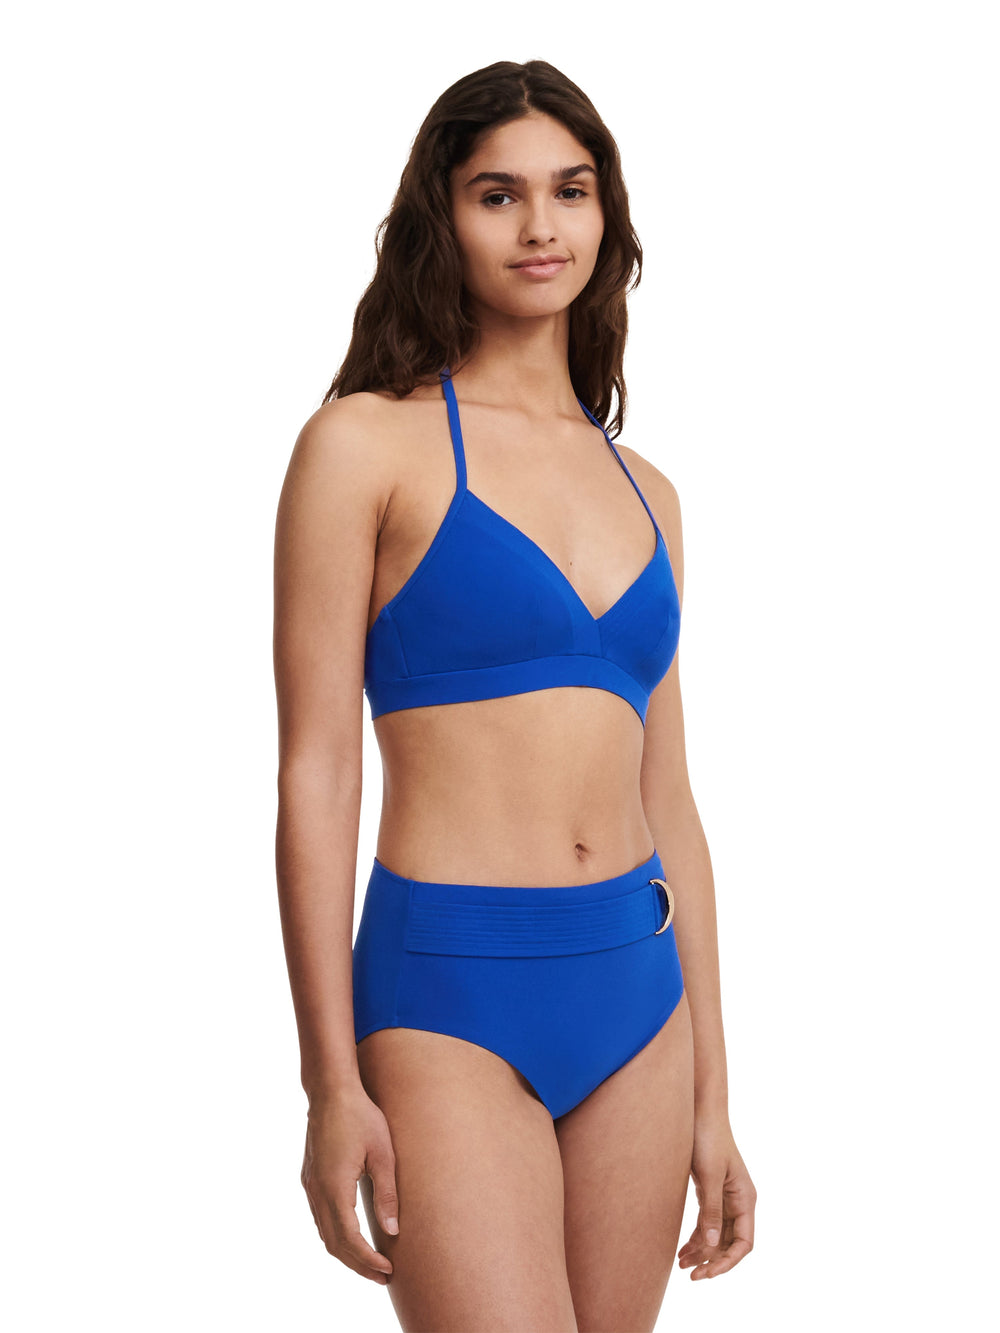 Trajes de baño Chantelle - Bikini de espuma triangular sin aros Celestial Bikini triangular azul profundo Trajes de baño Chantelle